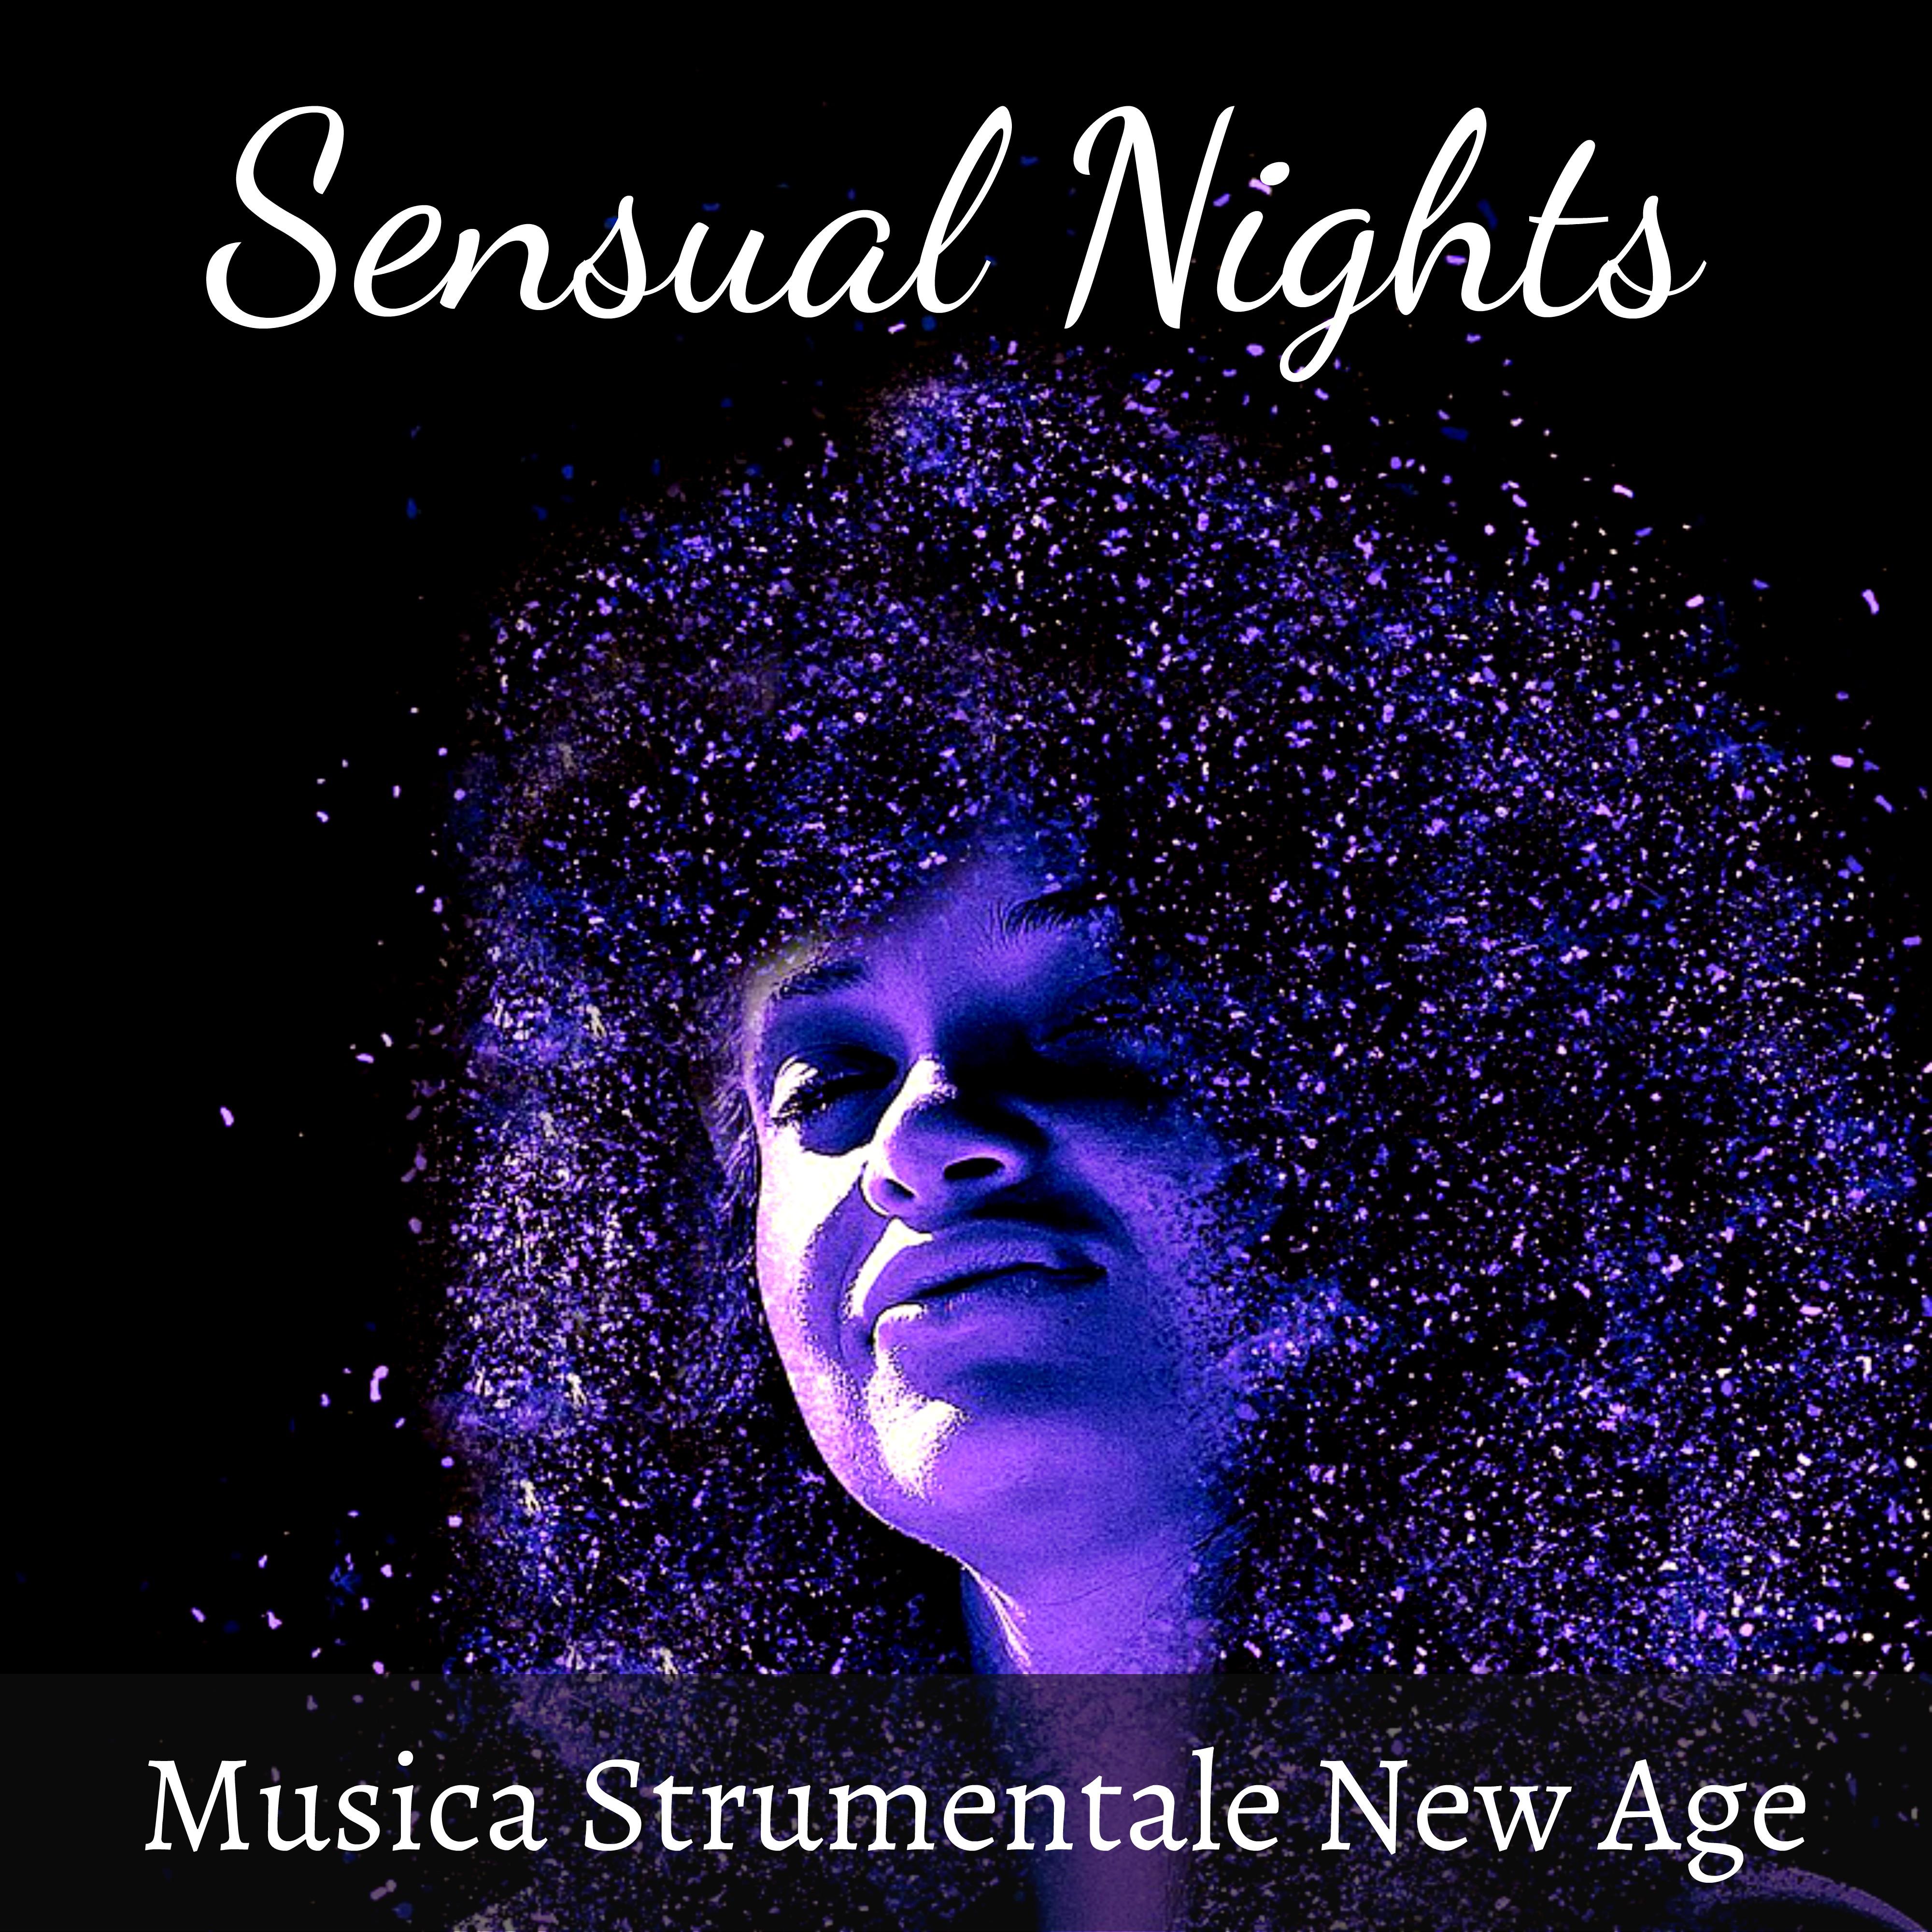 Sensual Nights - Musica Strumentale New Age per Meditazione Profonda Tecniche di Rilassamento Yoga Equilibrare Chakra con Suoni della Natura Binaurali Calmanti